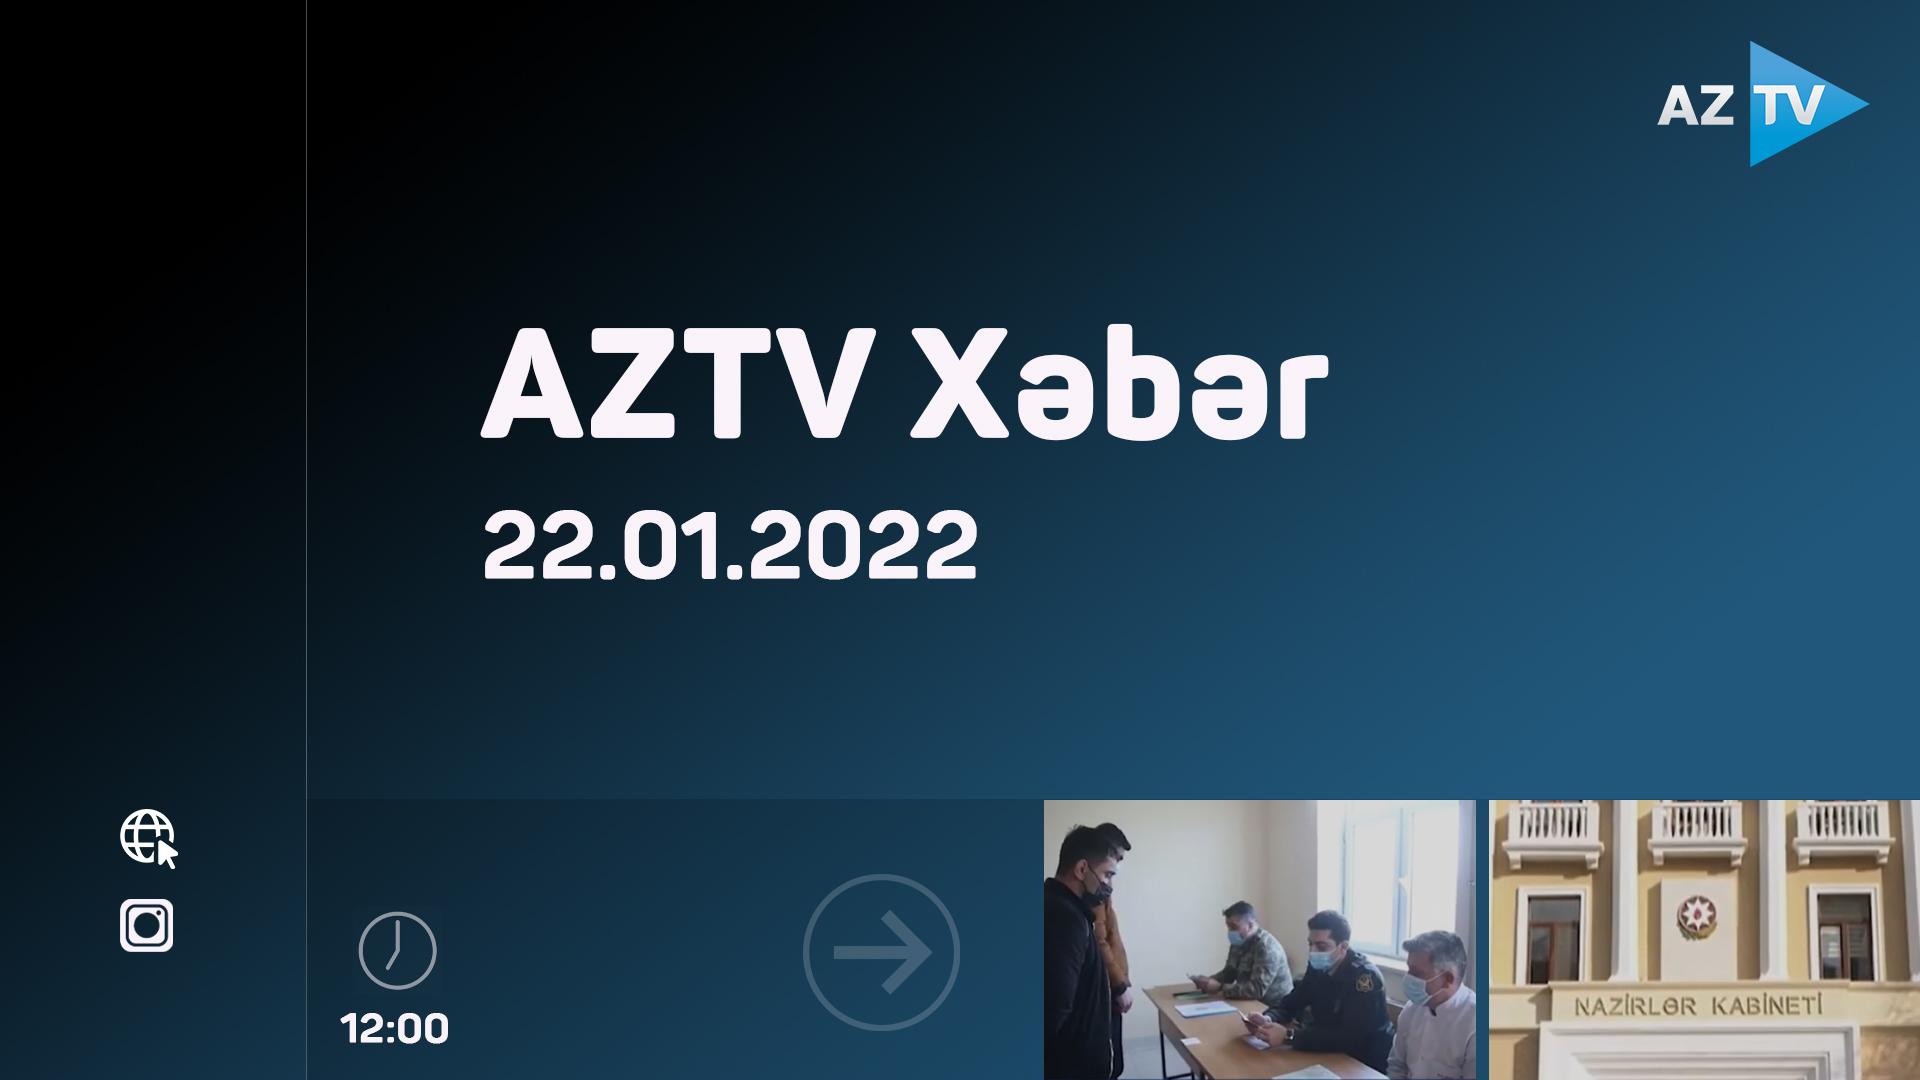 AZTV Xəbər 12:00 | 22.01.2022